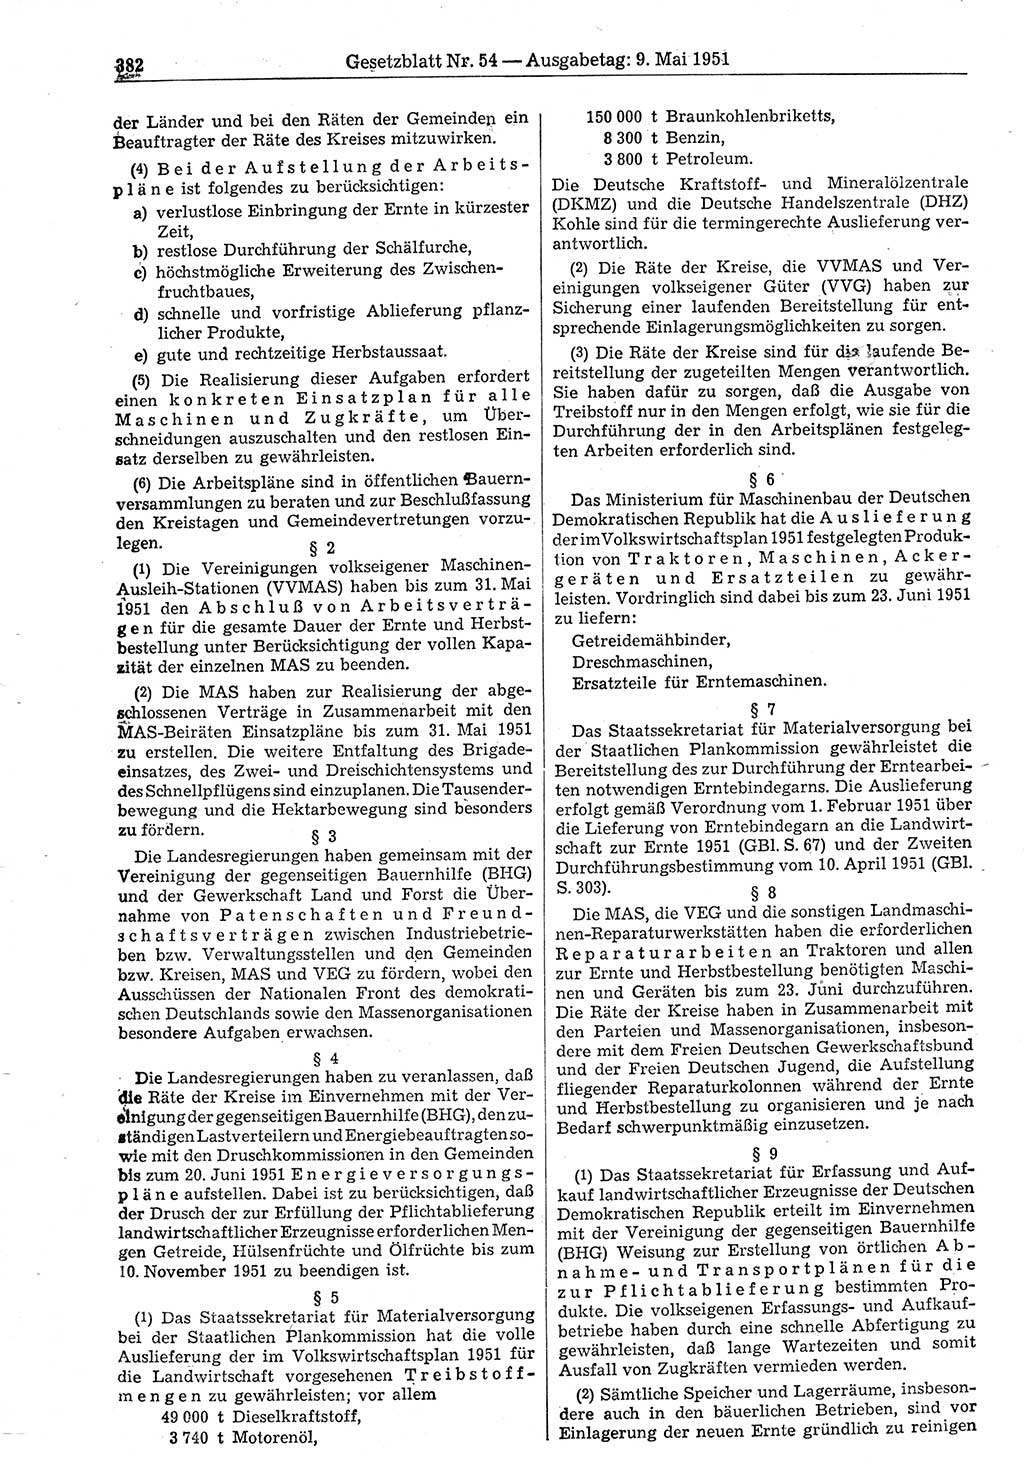 Gesetzblatt (GBl.) der Deutschen Demokratischen Republik (DDR) 1951, Seite 382 (GBl. DDR 1951, S. 382)